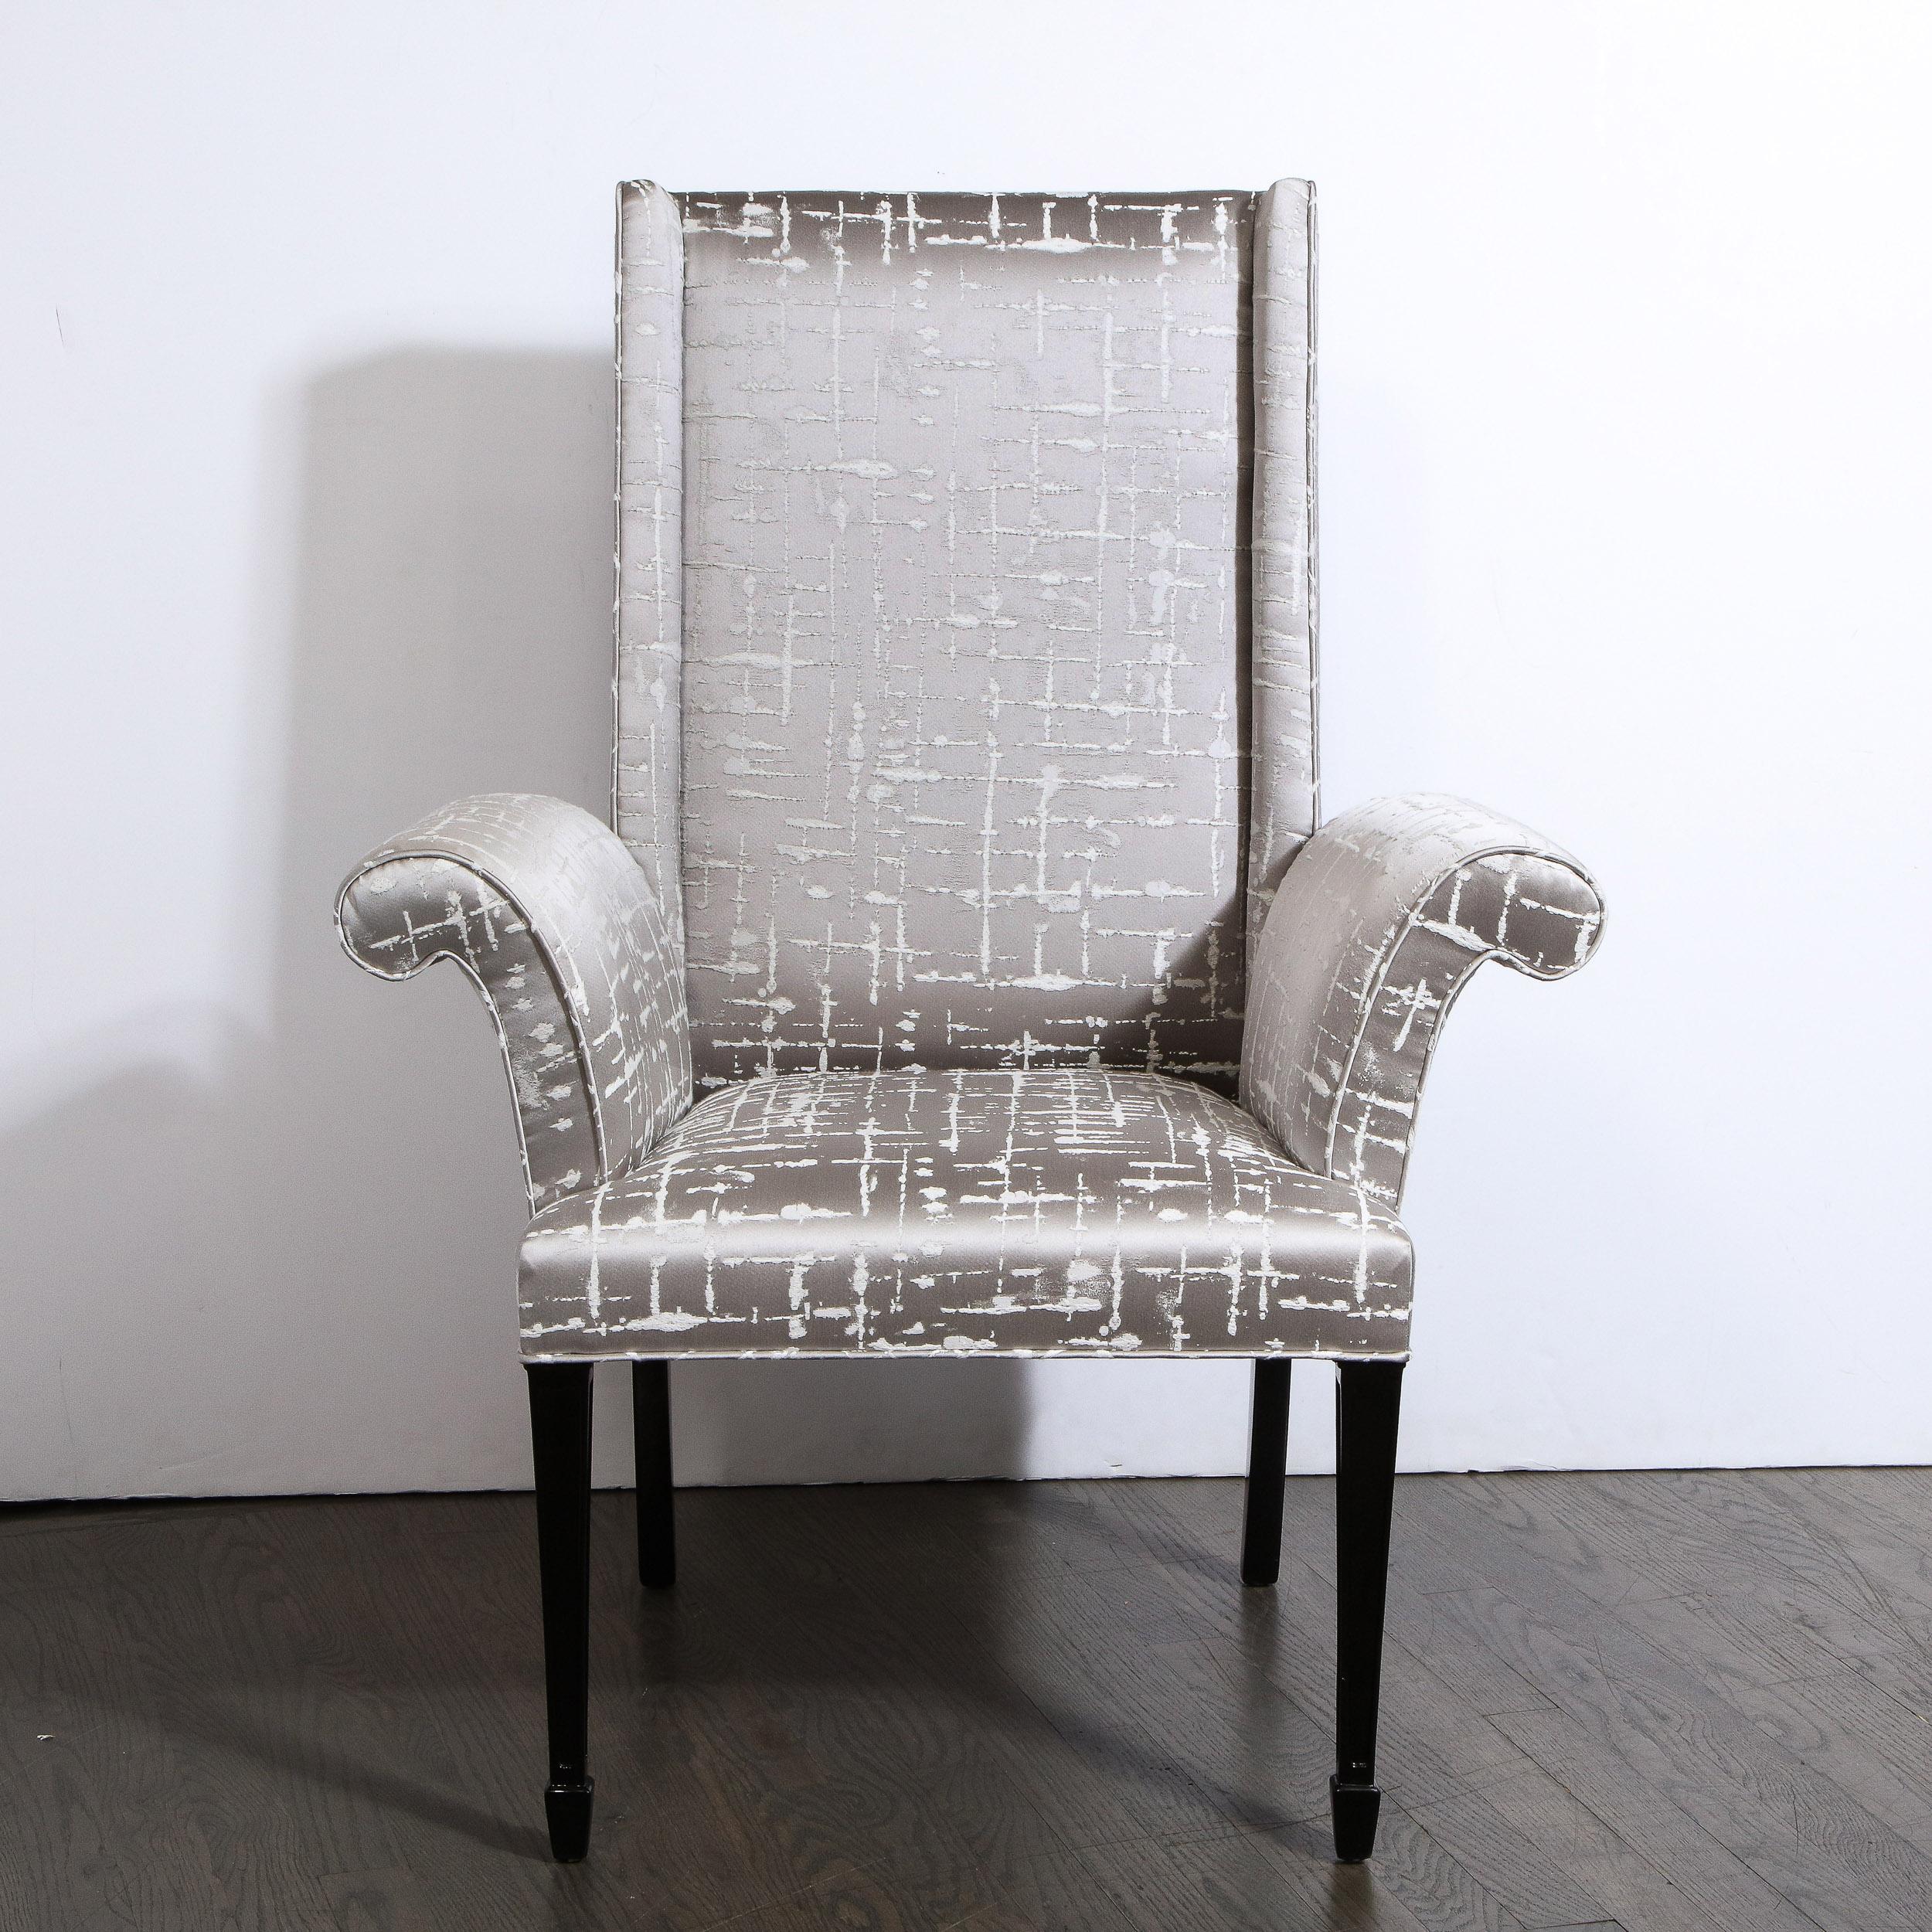 Cette élégante paire de fauteuils Hollywood Regency a été réalisée aux États-Unis, vers 1940. Ils sont dotés de pieds rectangulaires volumétriques stylisés de style klismos en noyer ébonisé. Les pieds avant présentent un détail géométrique effilé à